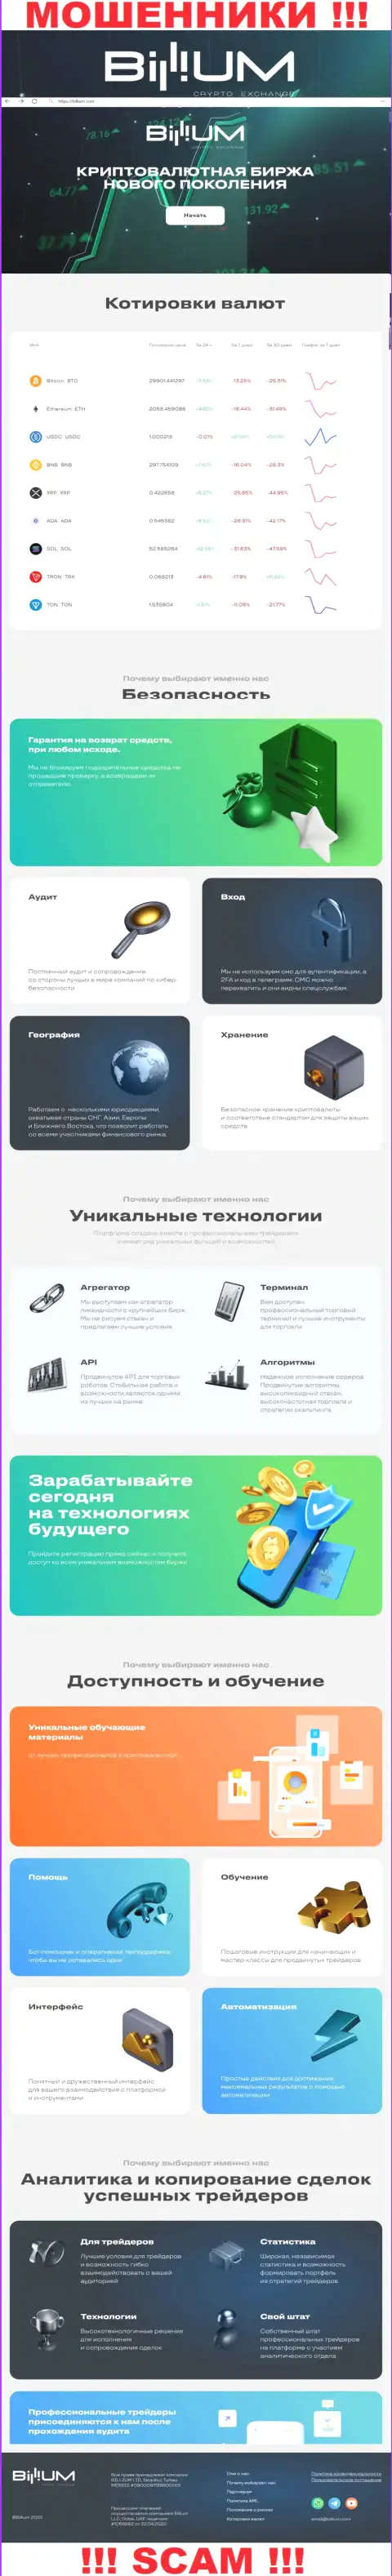 Инфа о официальном сайте мошенников Биллиум Финанс ЛЛК